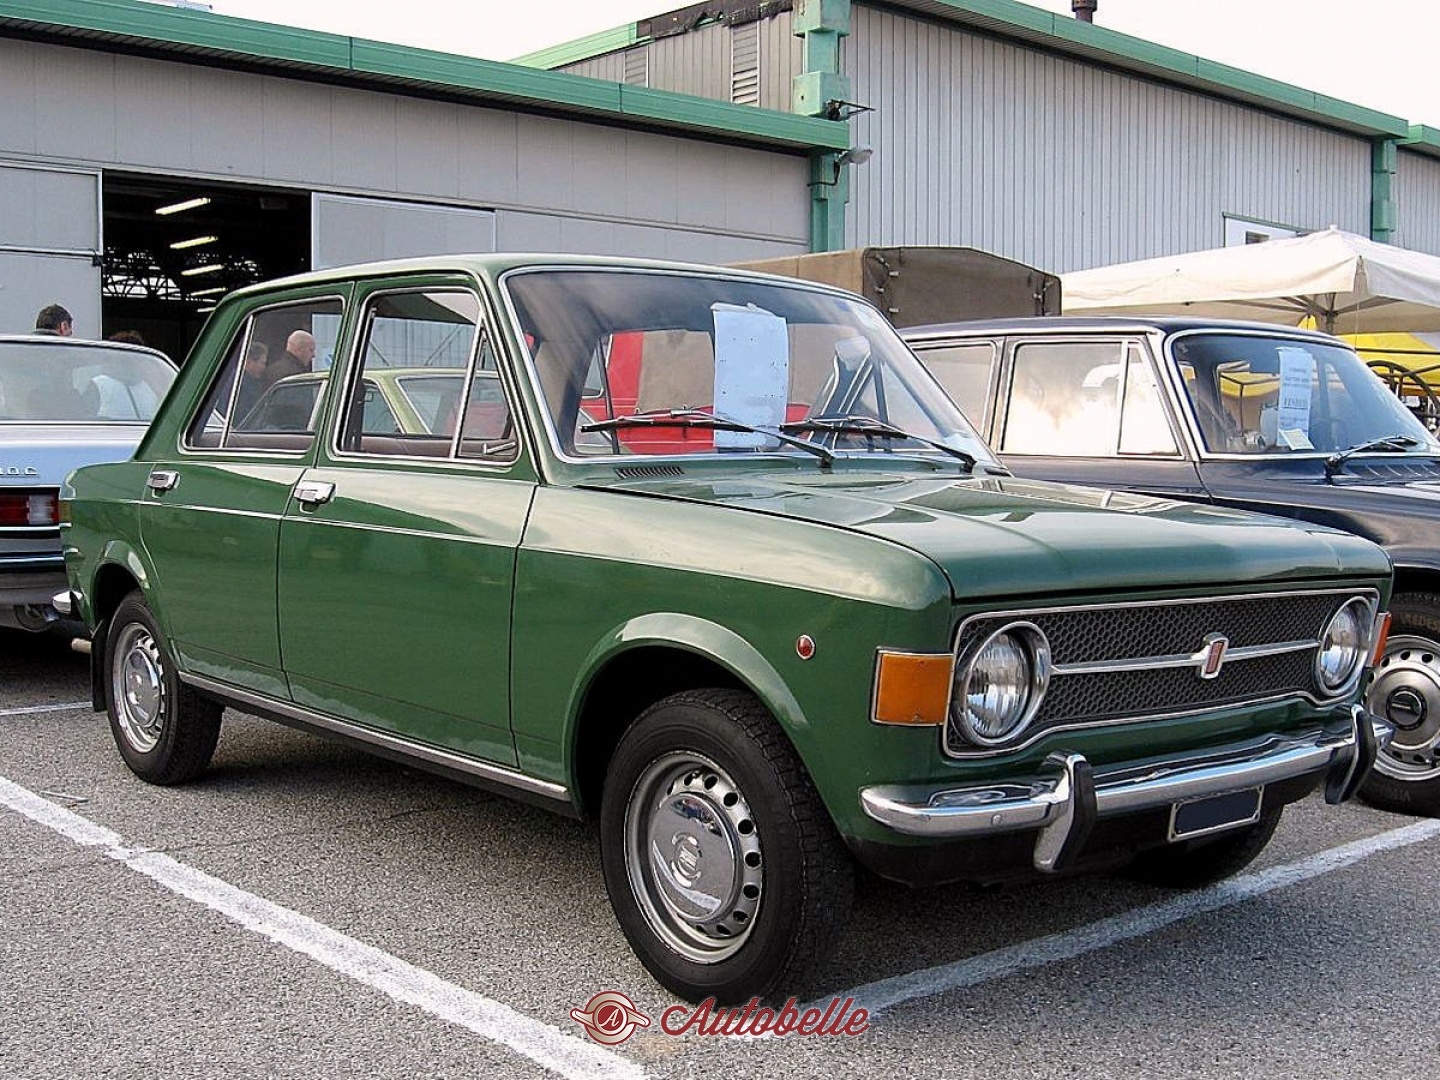 Год выпуска фиат. Фиат 128 седан. Fiat 128 1969. Фиат застава 128.